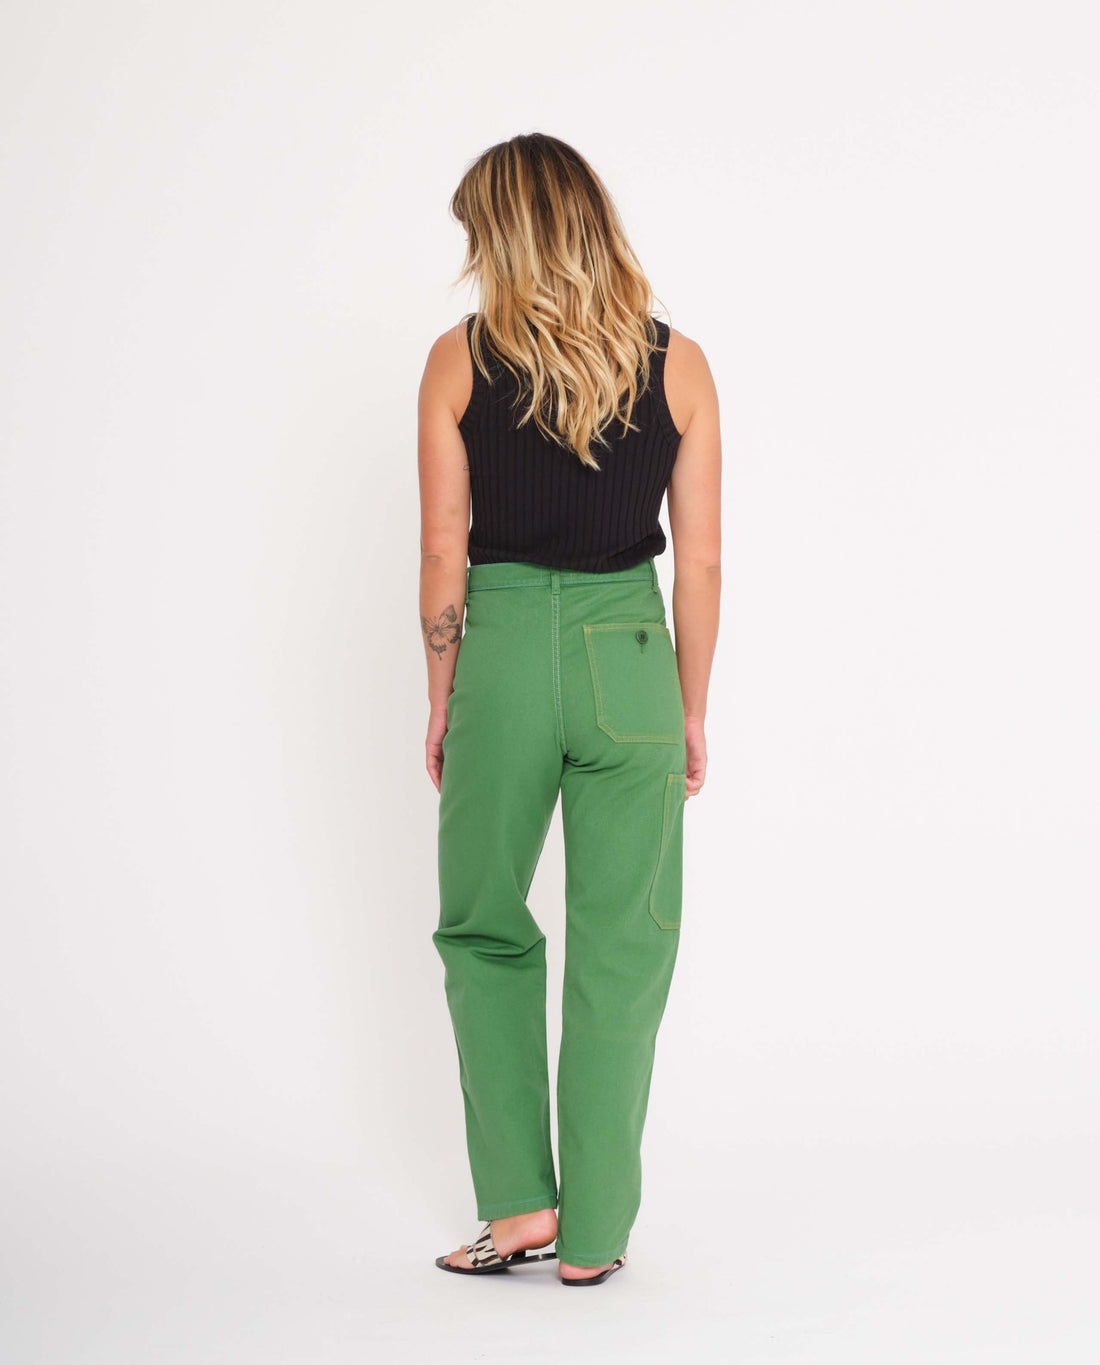 marché commun graine femme pantalon workwear travail coton biologique surpiqûres vert gazon